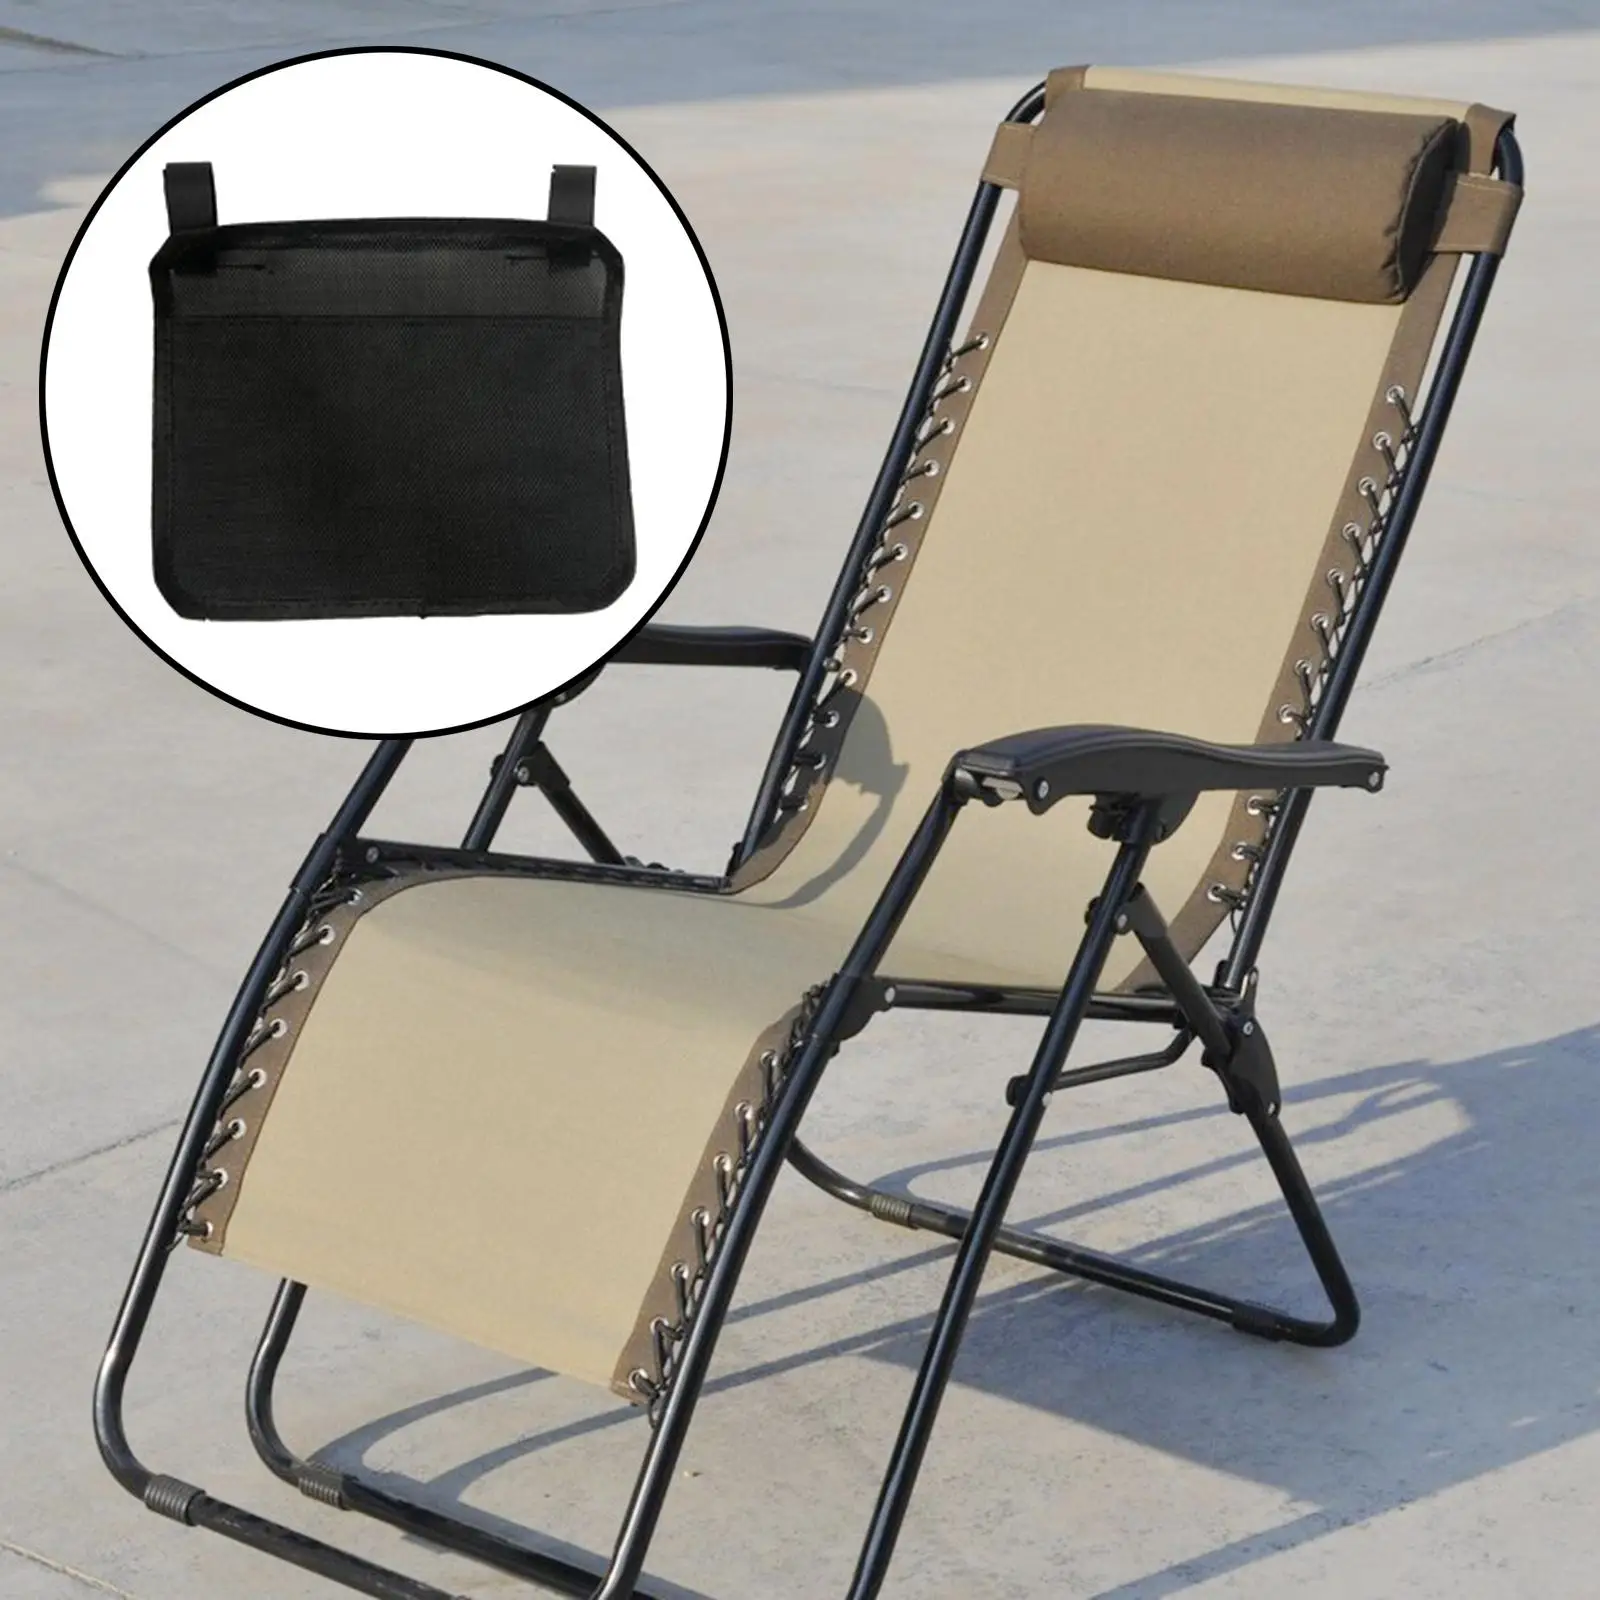 Universal   Side Bag Pockets for  Recliner Sun Lounger Bedside office  bookshelf Holder Hanging Bag